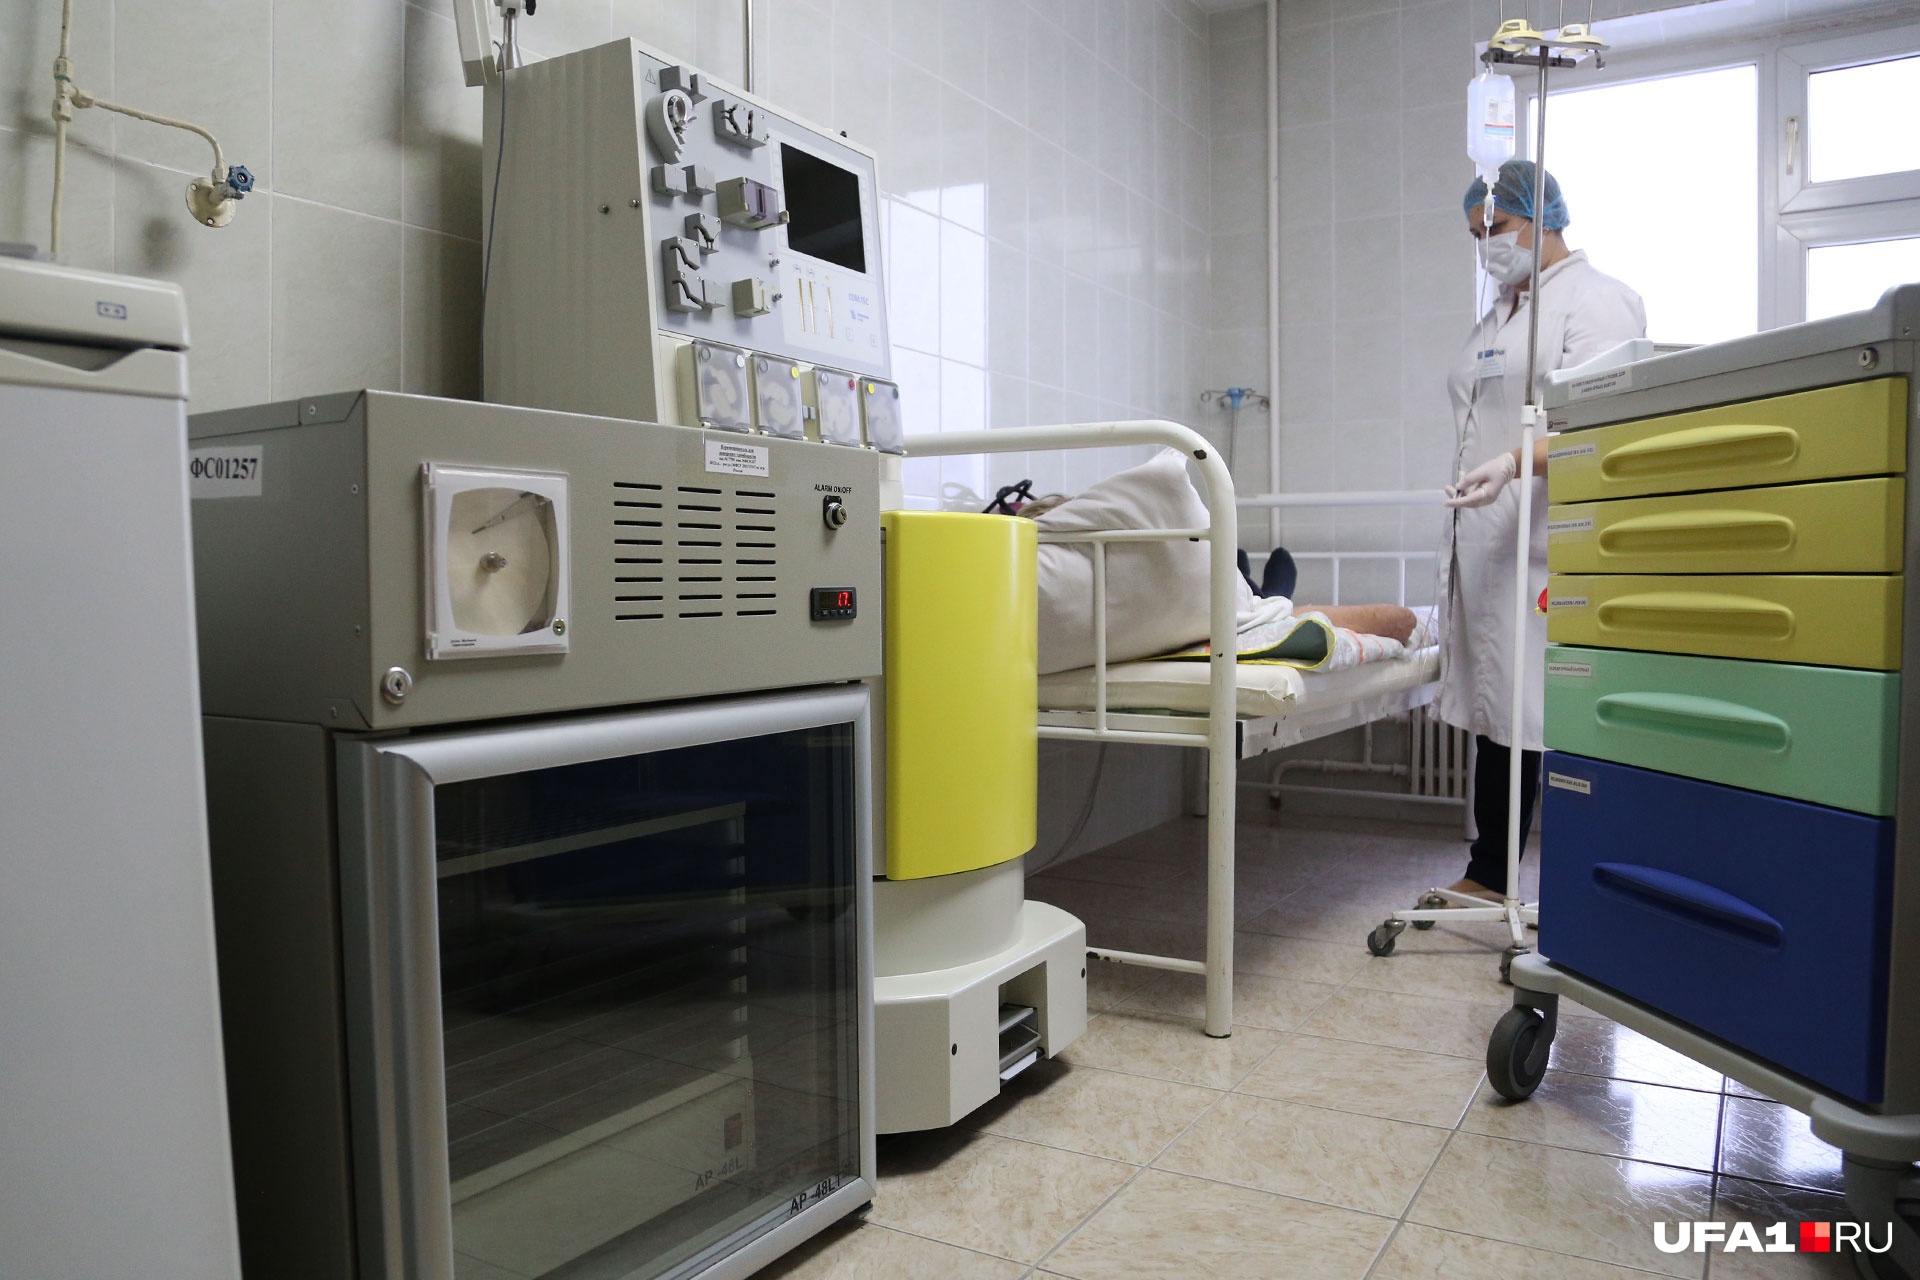 Сепаратор (аппарат слева) предназначен для очищения крови, процедура занимает не более 40 минут 